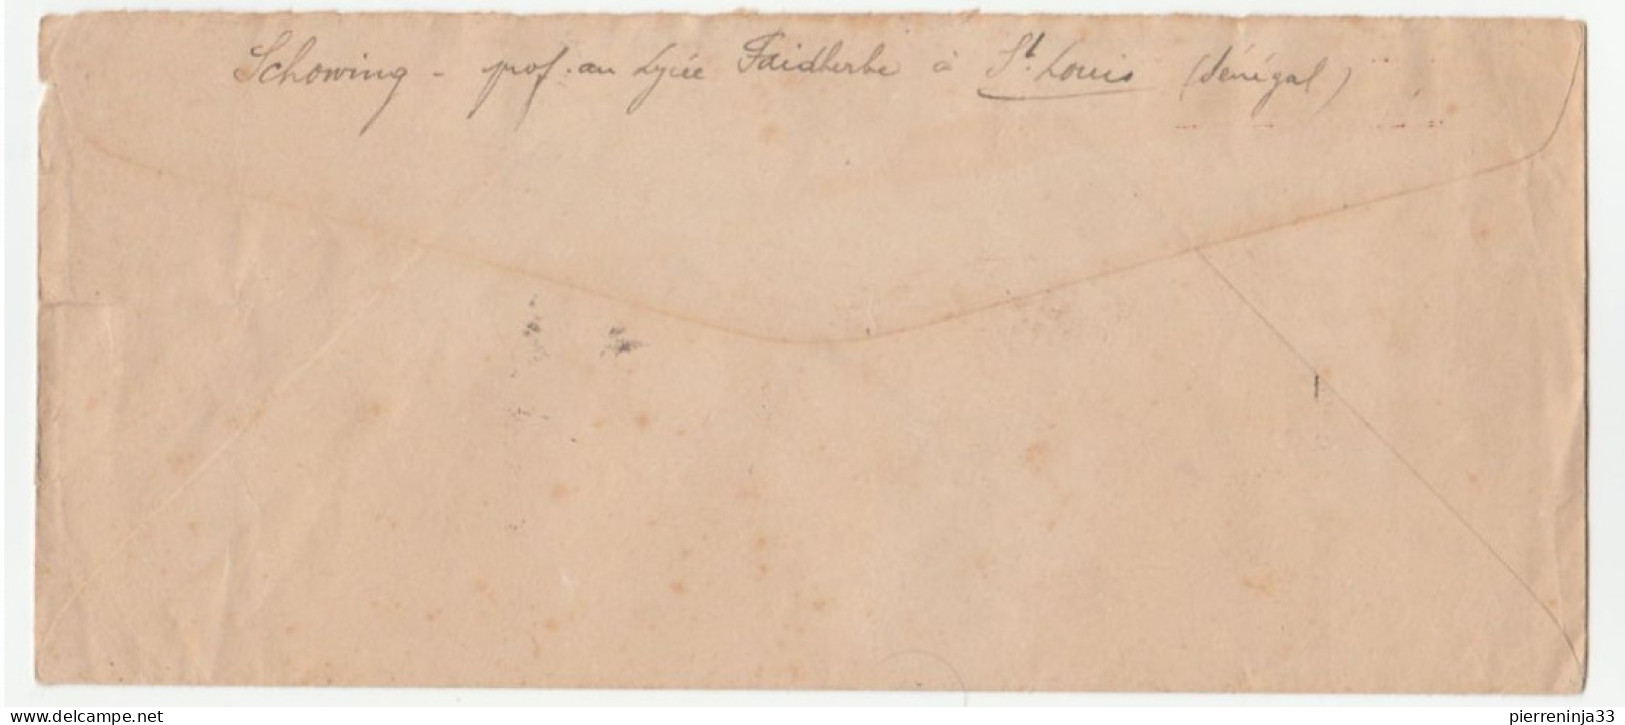 Lettre Recommandée St Louis Du Sénégal/ Journée Du Timbre 1946 - Briefe U. Dokumente